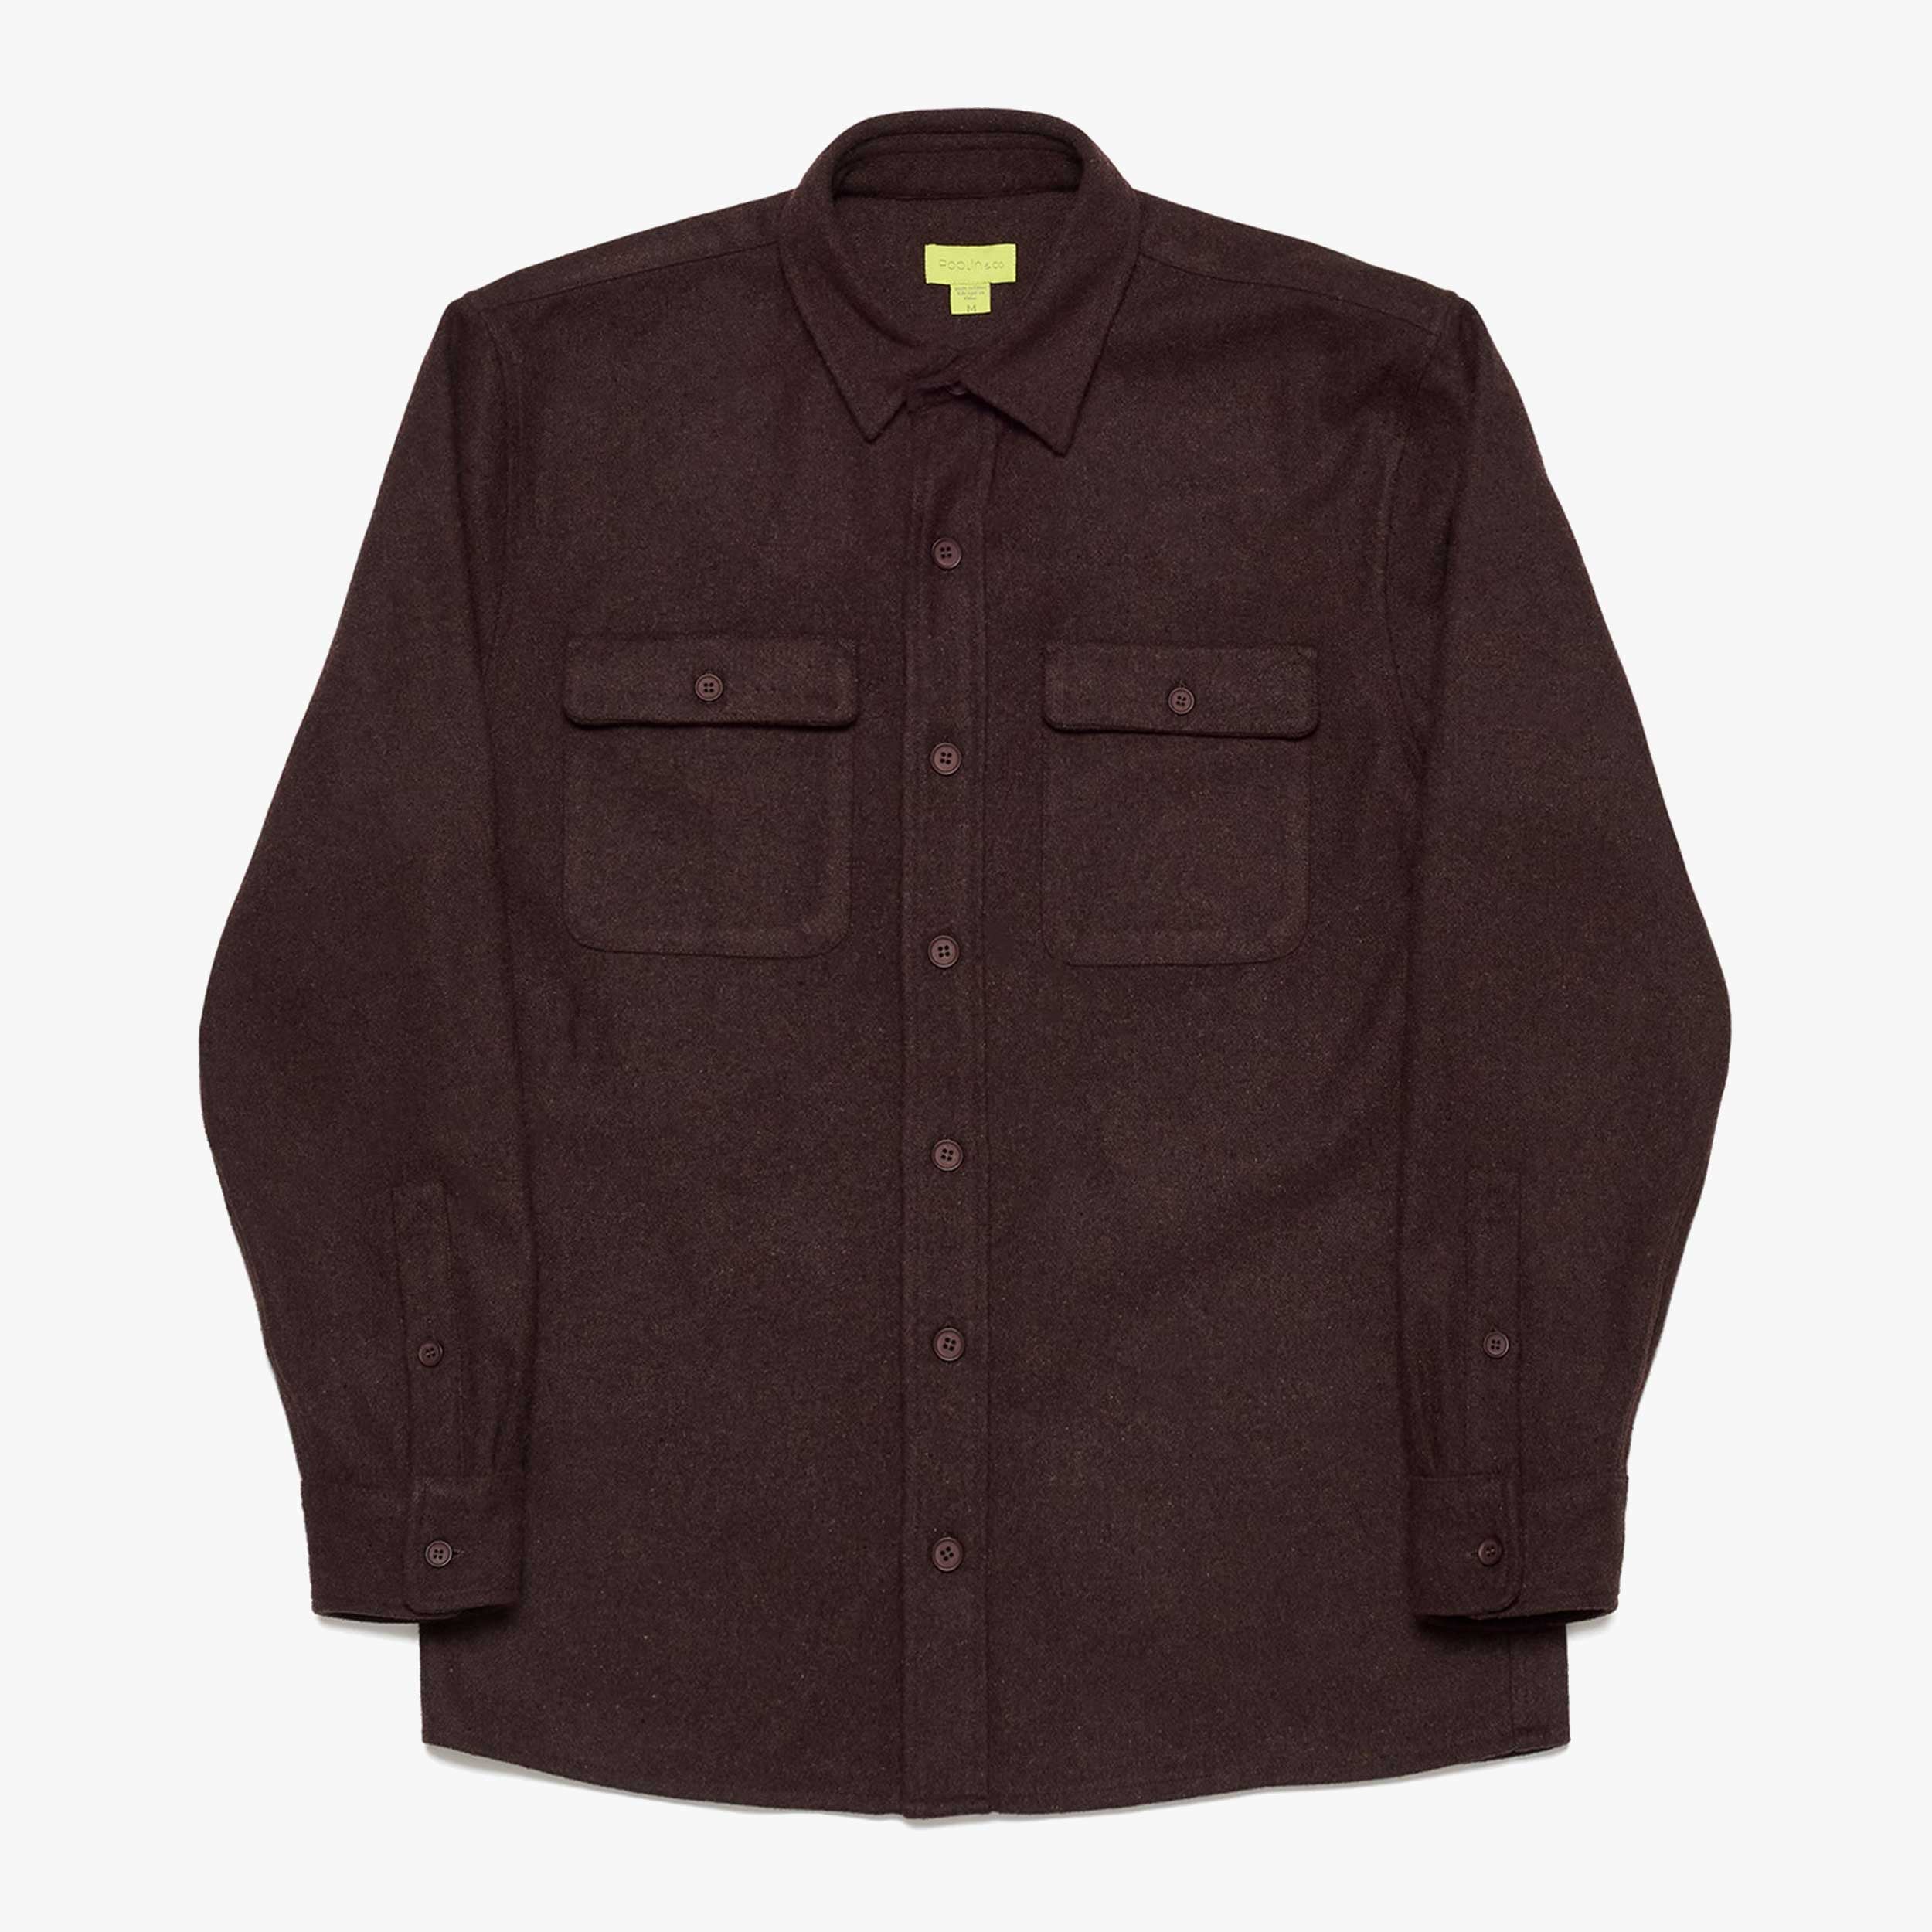 Speckled Brown Solid Shirt Jacket